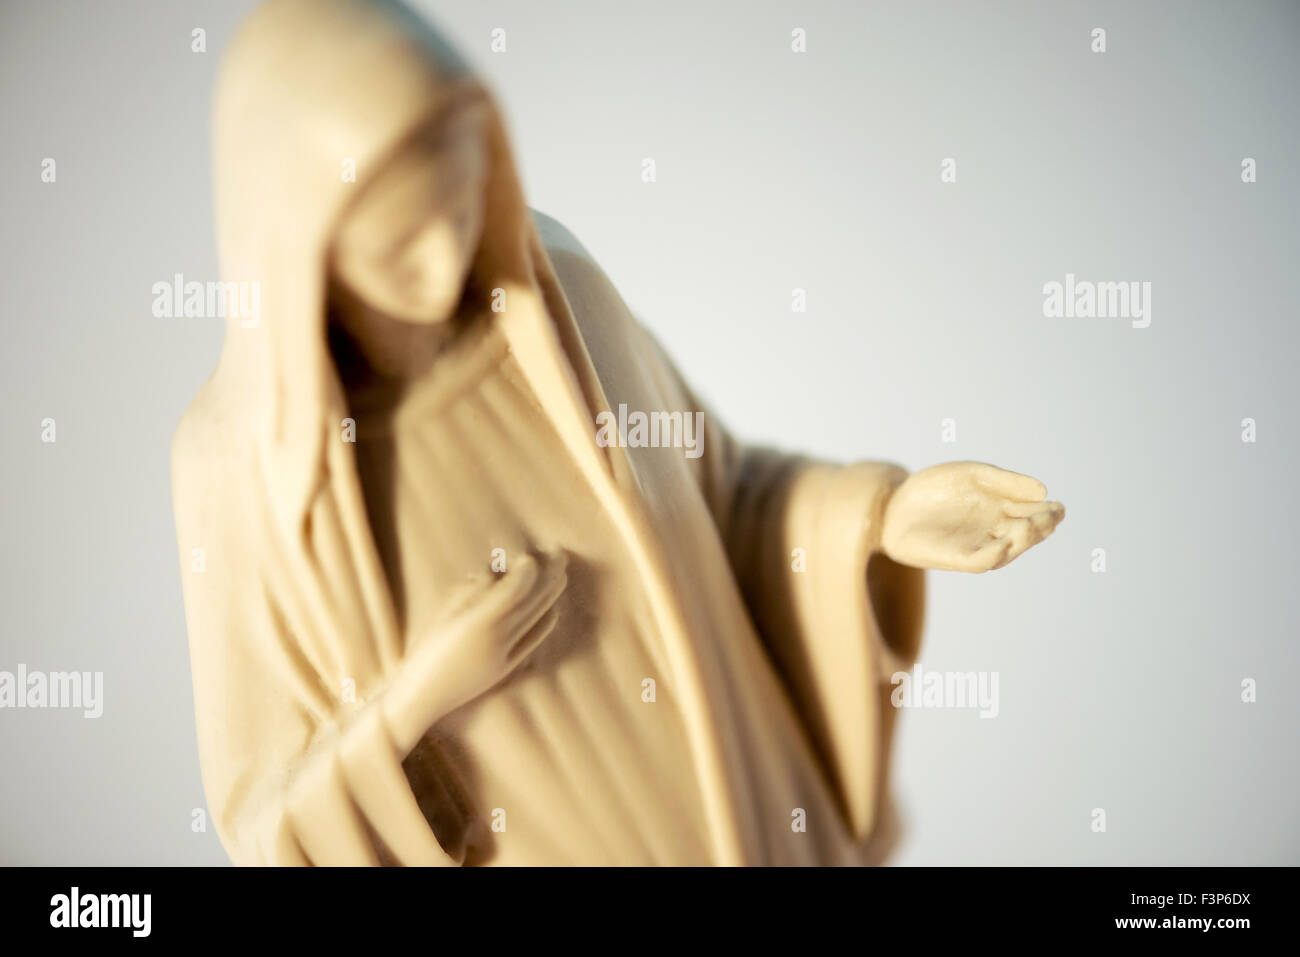 Abbildung der Jungfrau Maria mit dem Kopf verneigte sich in Demut, Nächstenliebe darstellen, wie sie ihre erweiterten Handfläche hält, hoch oben in der Nähe einer Stockfoto